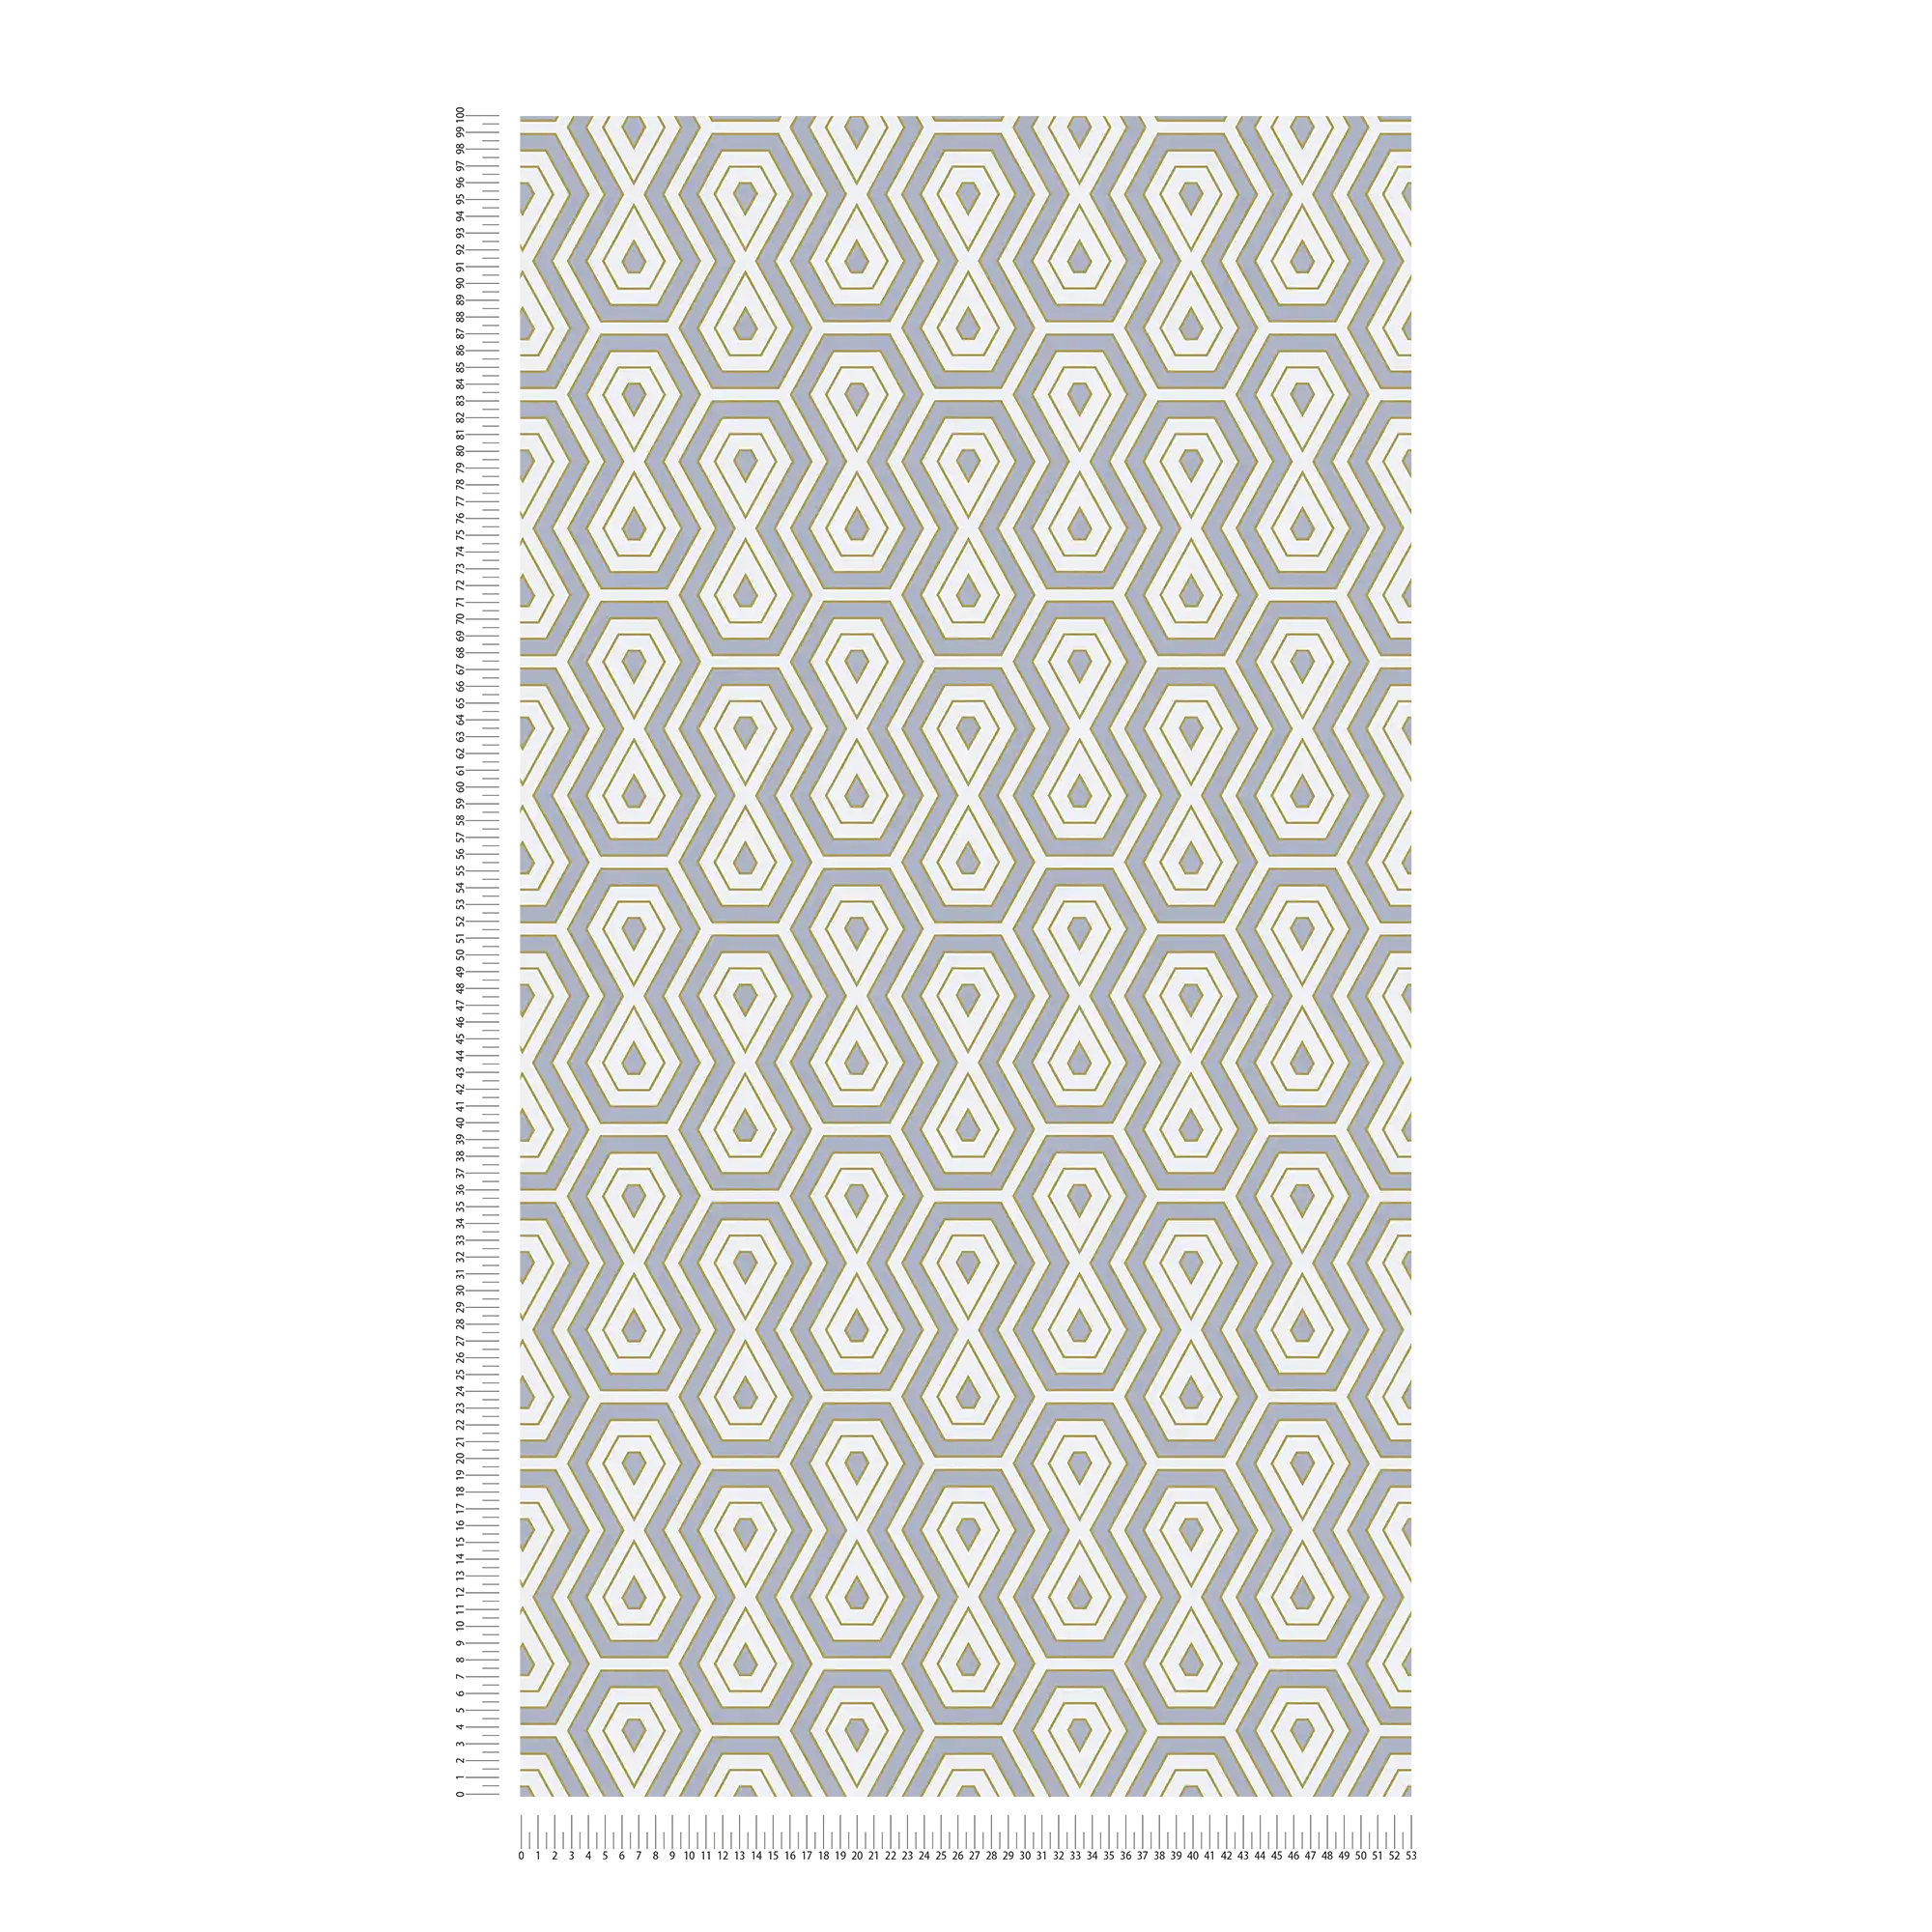             Papier peint intissé gris or motif rétro géométrique
        